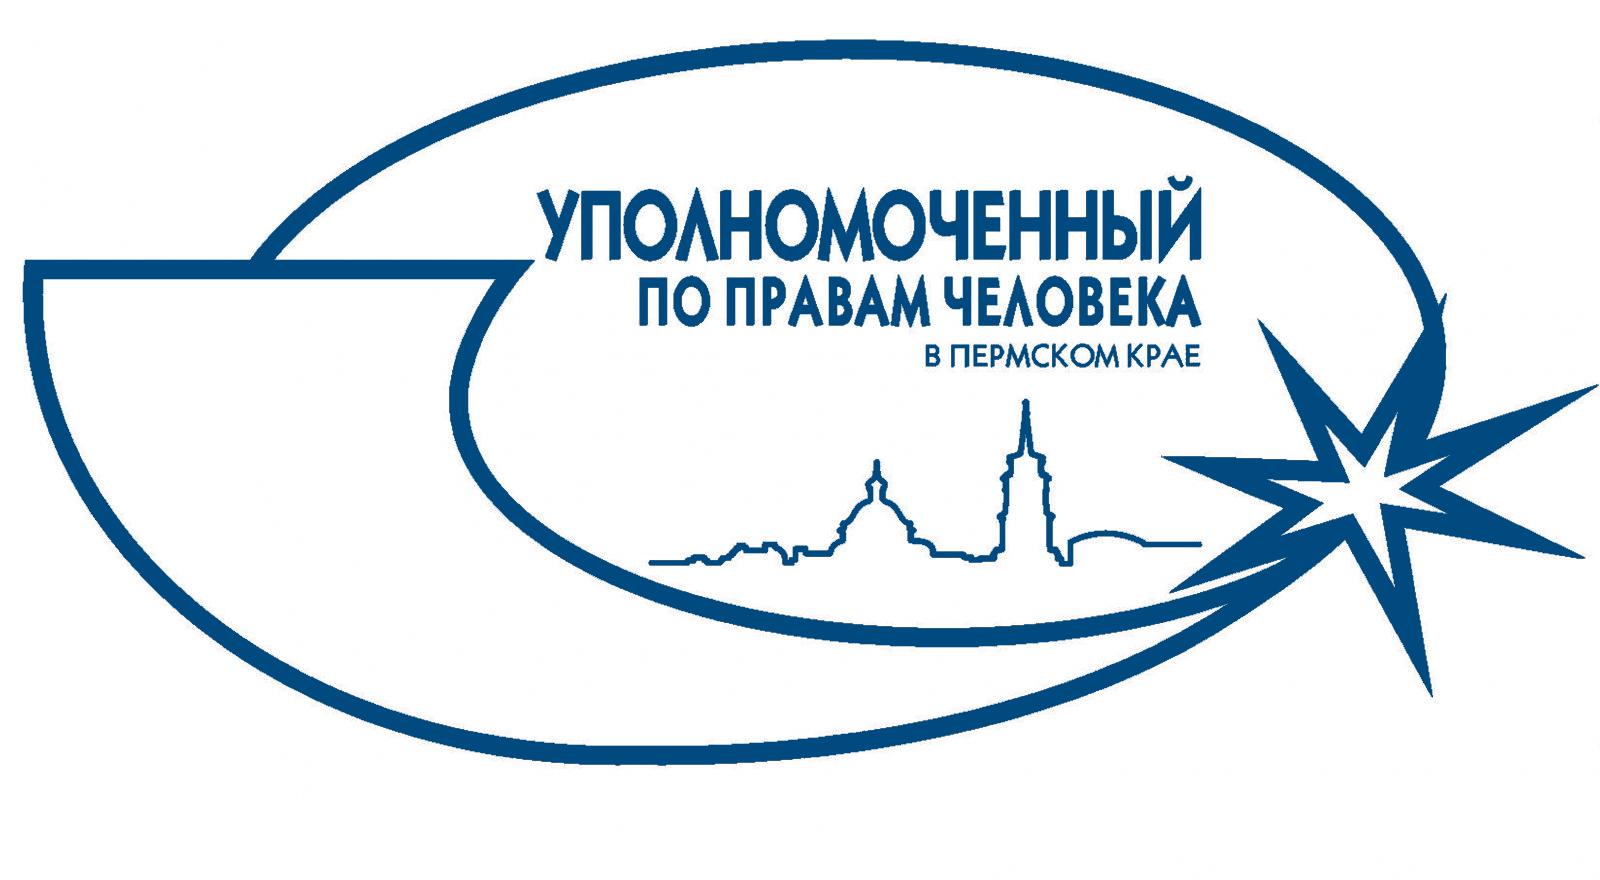 Уполномоченный по правам человека в Пермском крае приглашает принять участие в конкурсе плакатов (коллажей) и конкурсе видеороликов